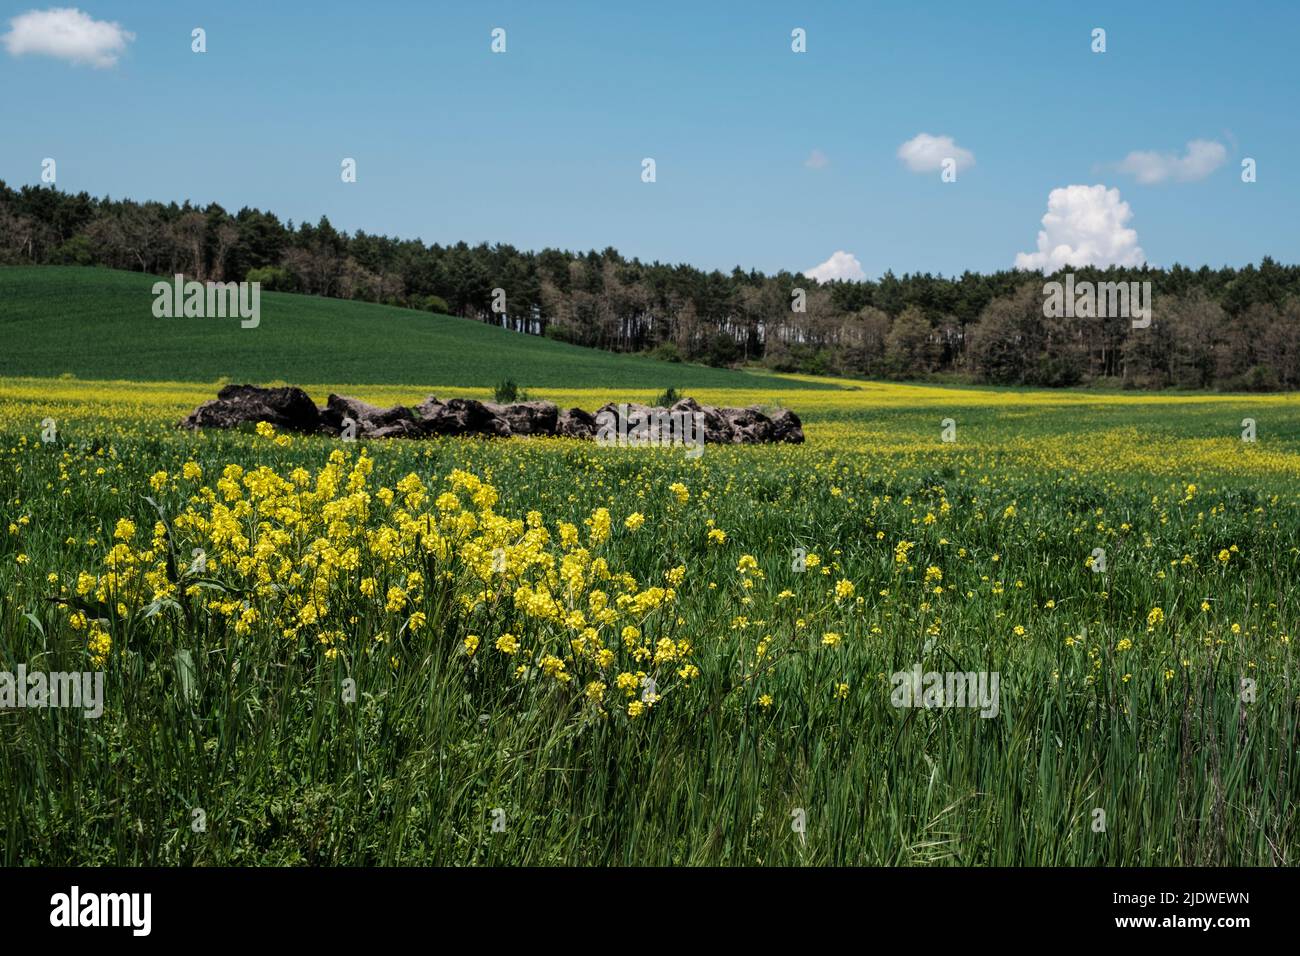 Spain, Camino de Santiago. Canola Growing in the Fields along the Camino, near San Juan de Ortega. Stock Photo